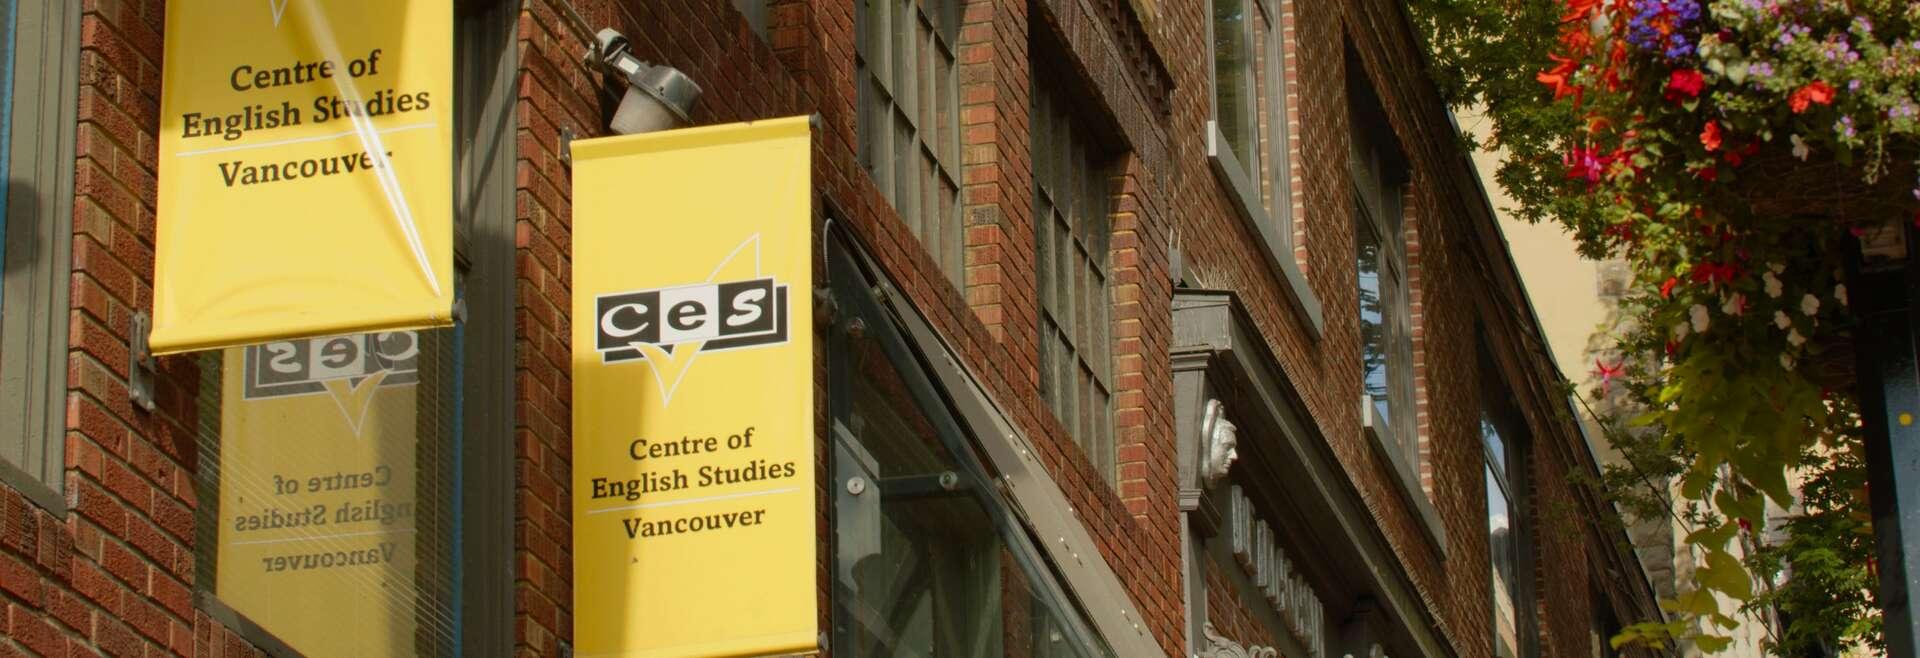 Sprachaufenthalt Kanada, CES Vancouver, Schulgebäude